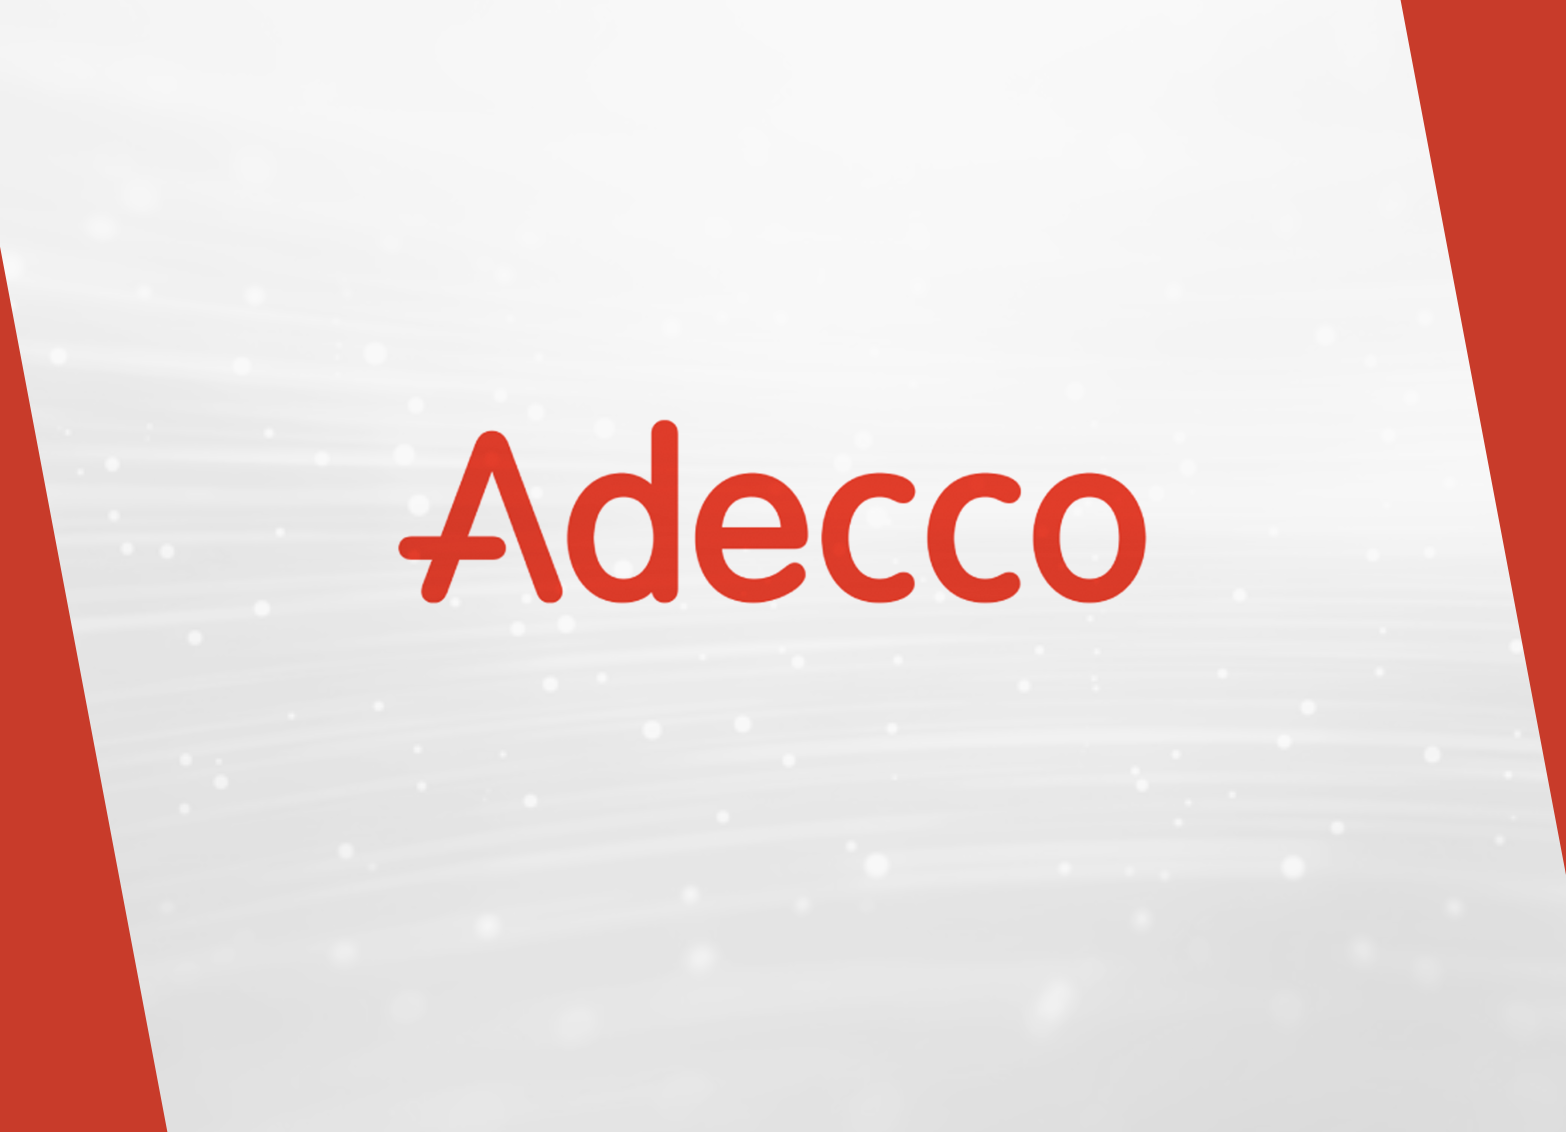 Imagen. EmpléAte, la nueva app de Adecco para buscar empleo. Adeccorientaempleo